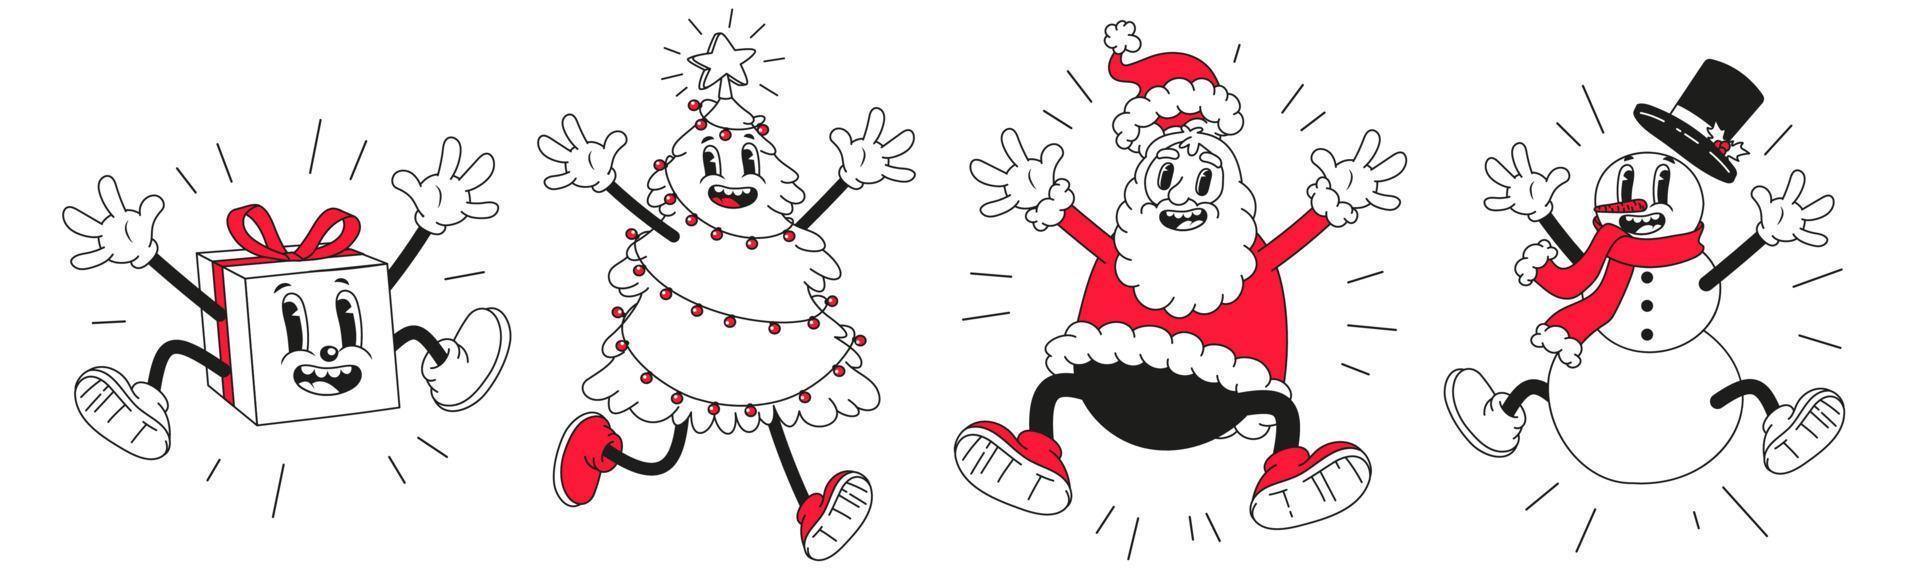 personajes de dibujos animados de navidad. divertido muñeco de nieve, santa claus en estilo de dibujos animados retro de moda. vector